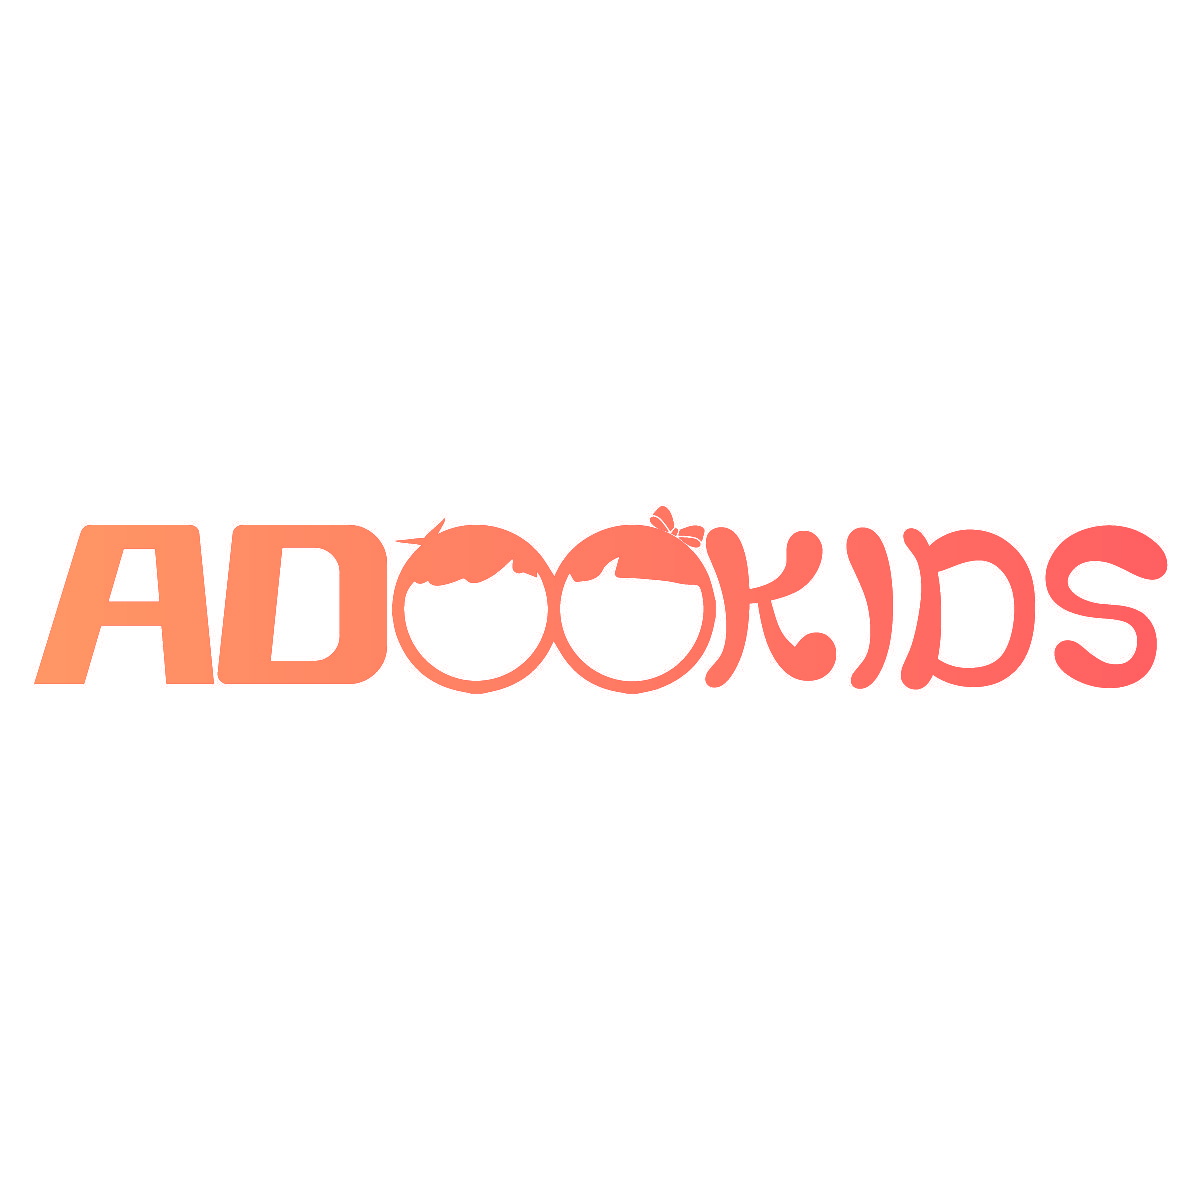 ADOOKIDS